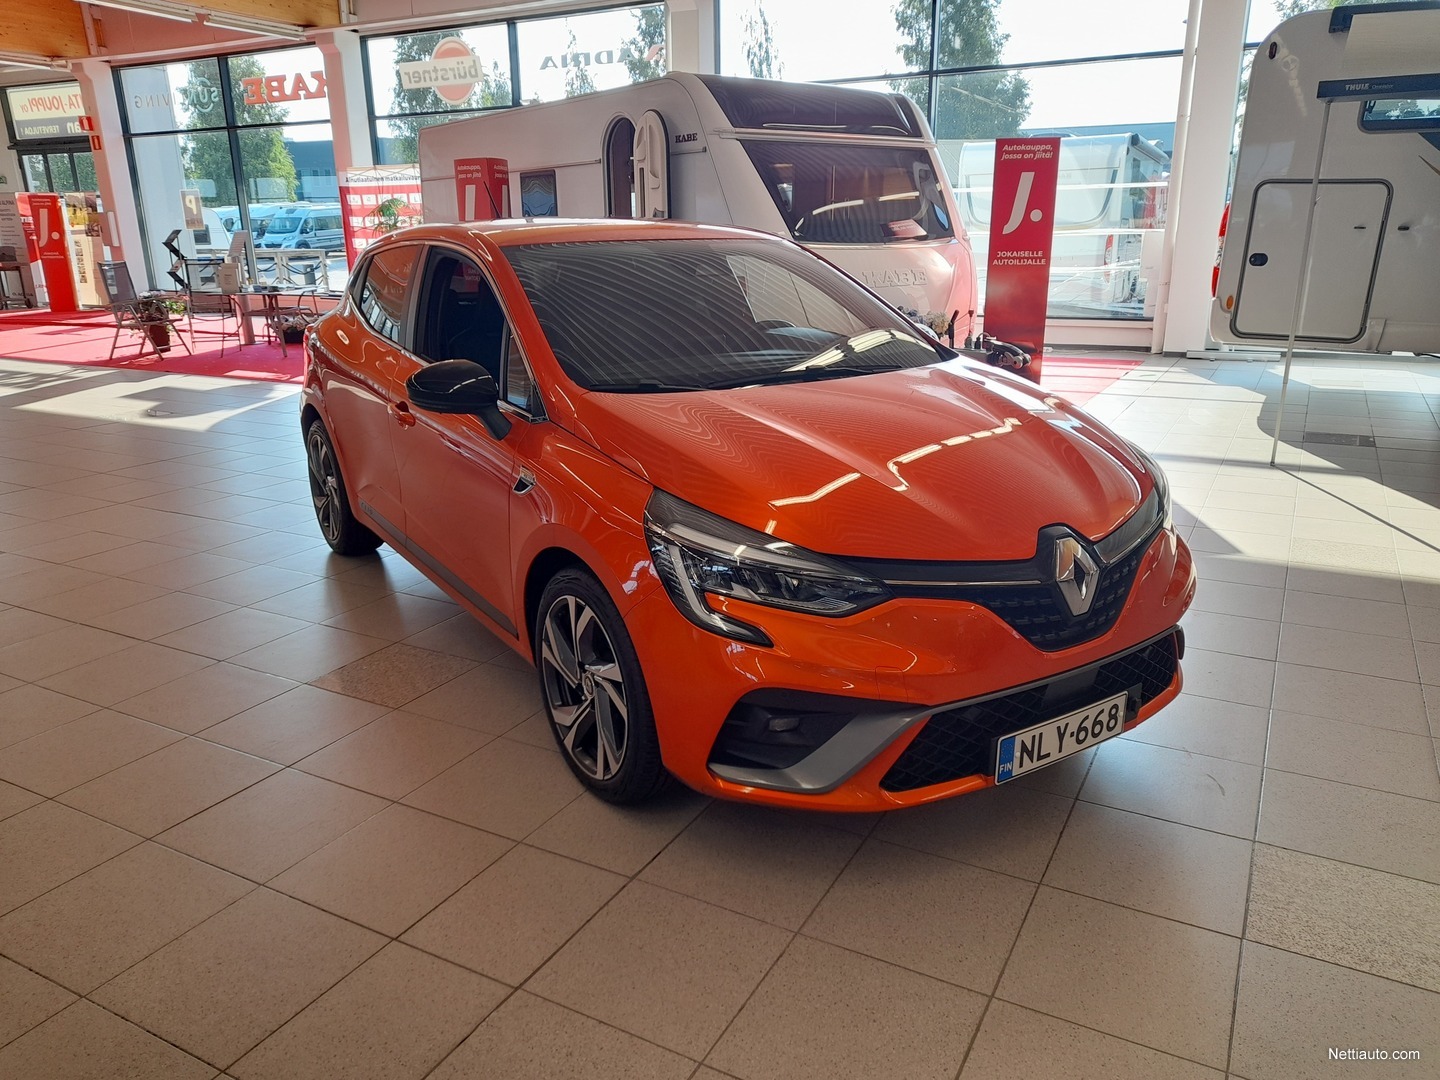 Renault Clio R.S. Line 2019 - Valencia Orange